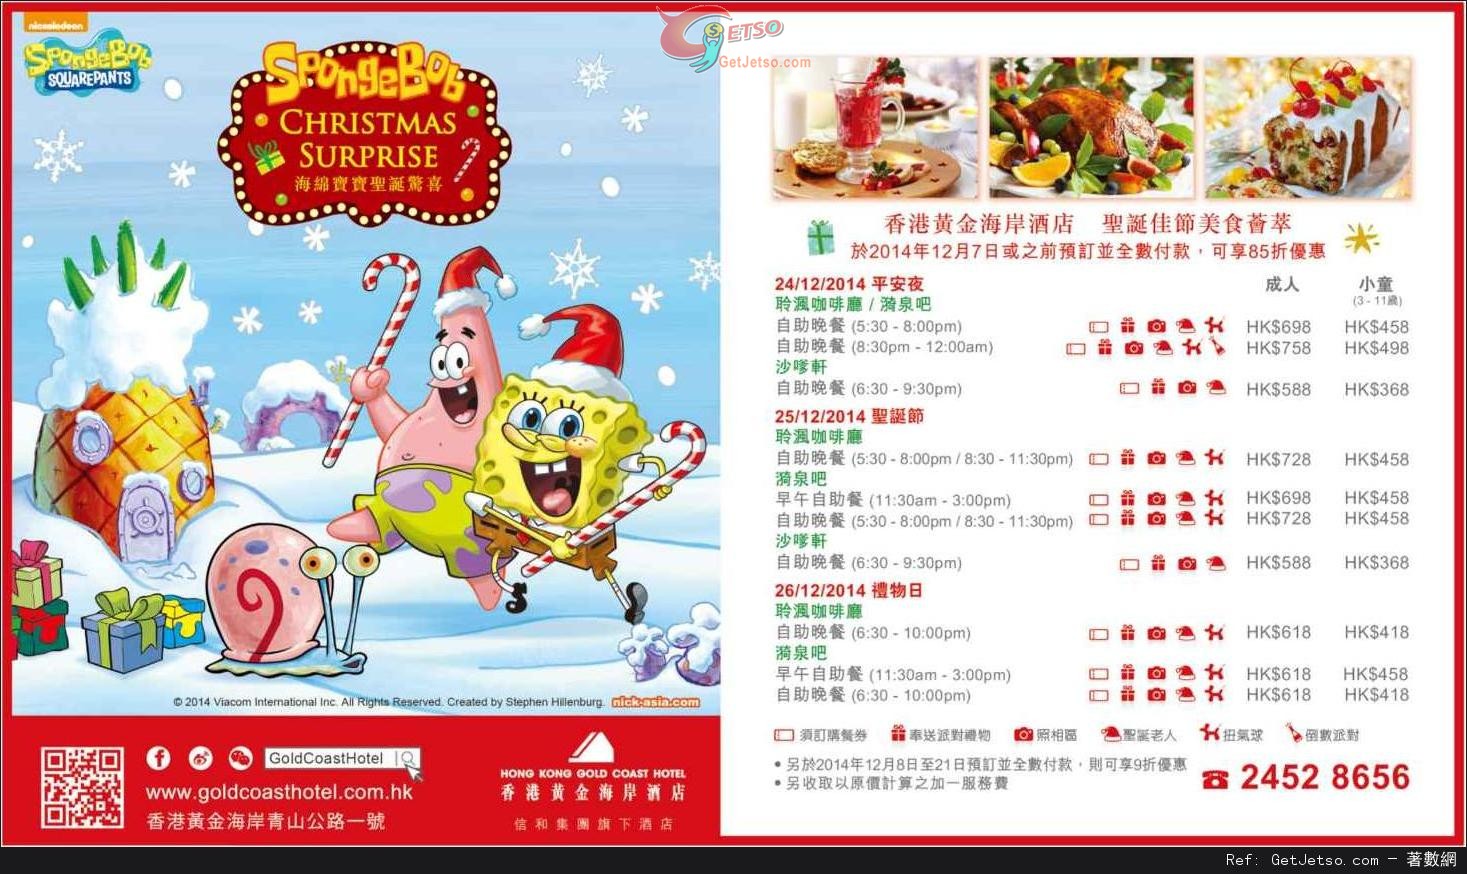 香港黃金海岸酒店聖誕佳節自助餐低至85折預訂優惠(至14年12月21日)圖片1